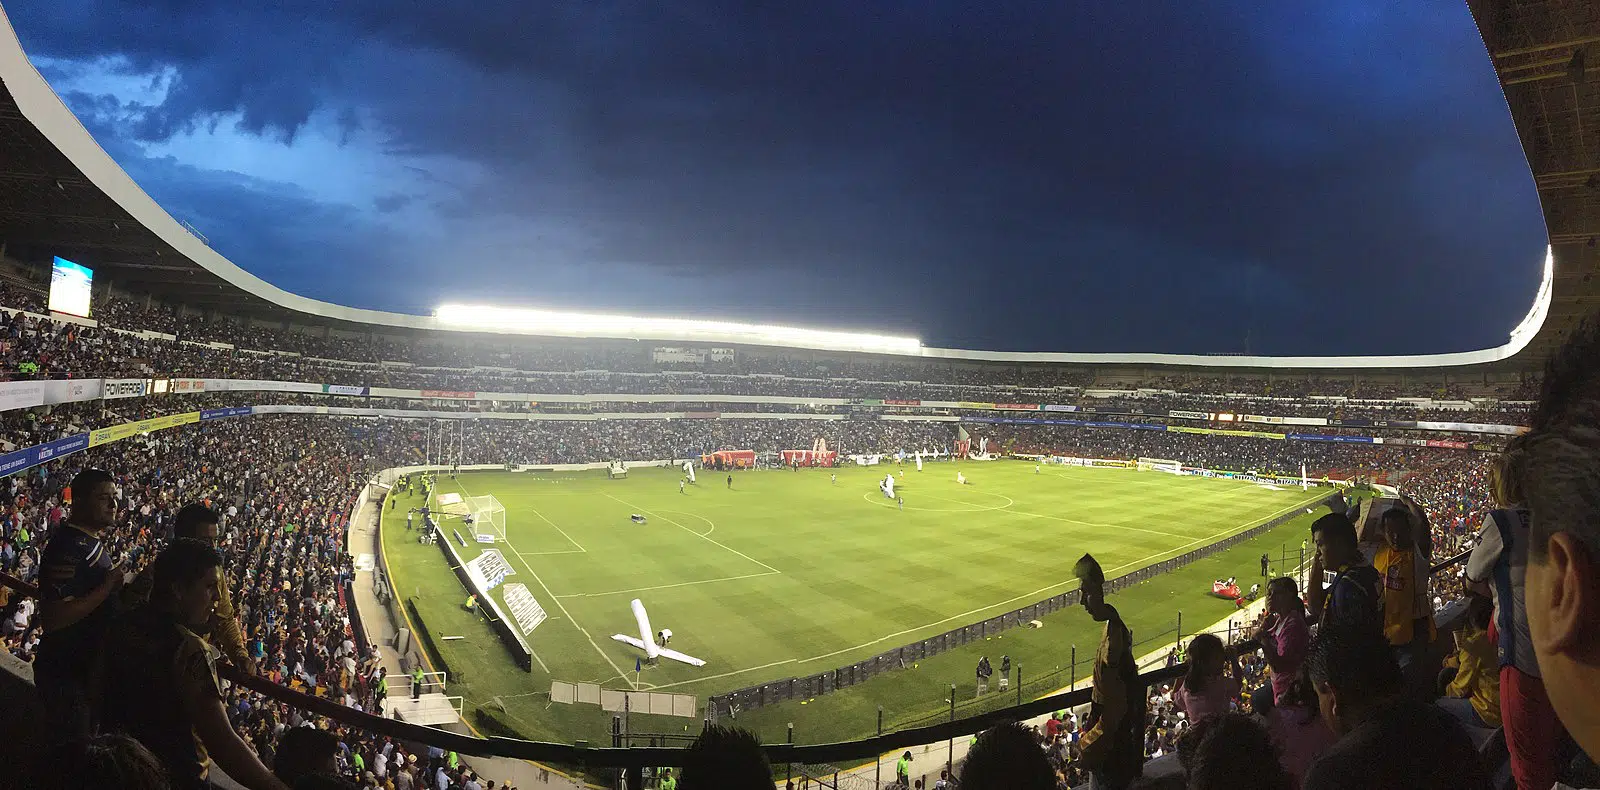 Corregidora Stadium